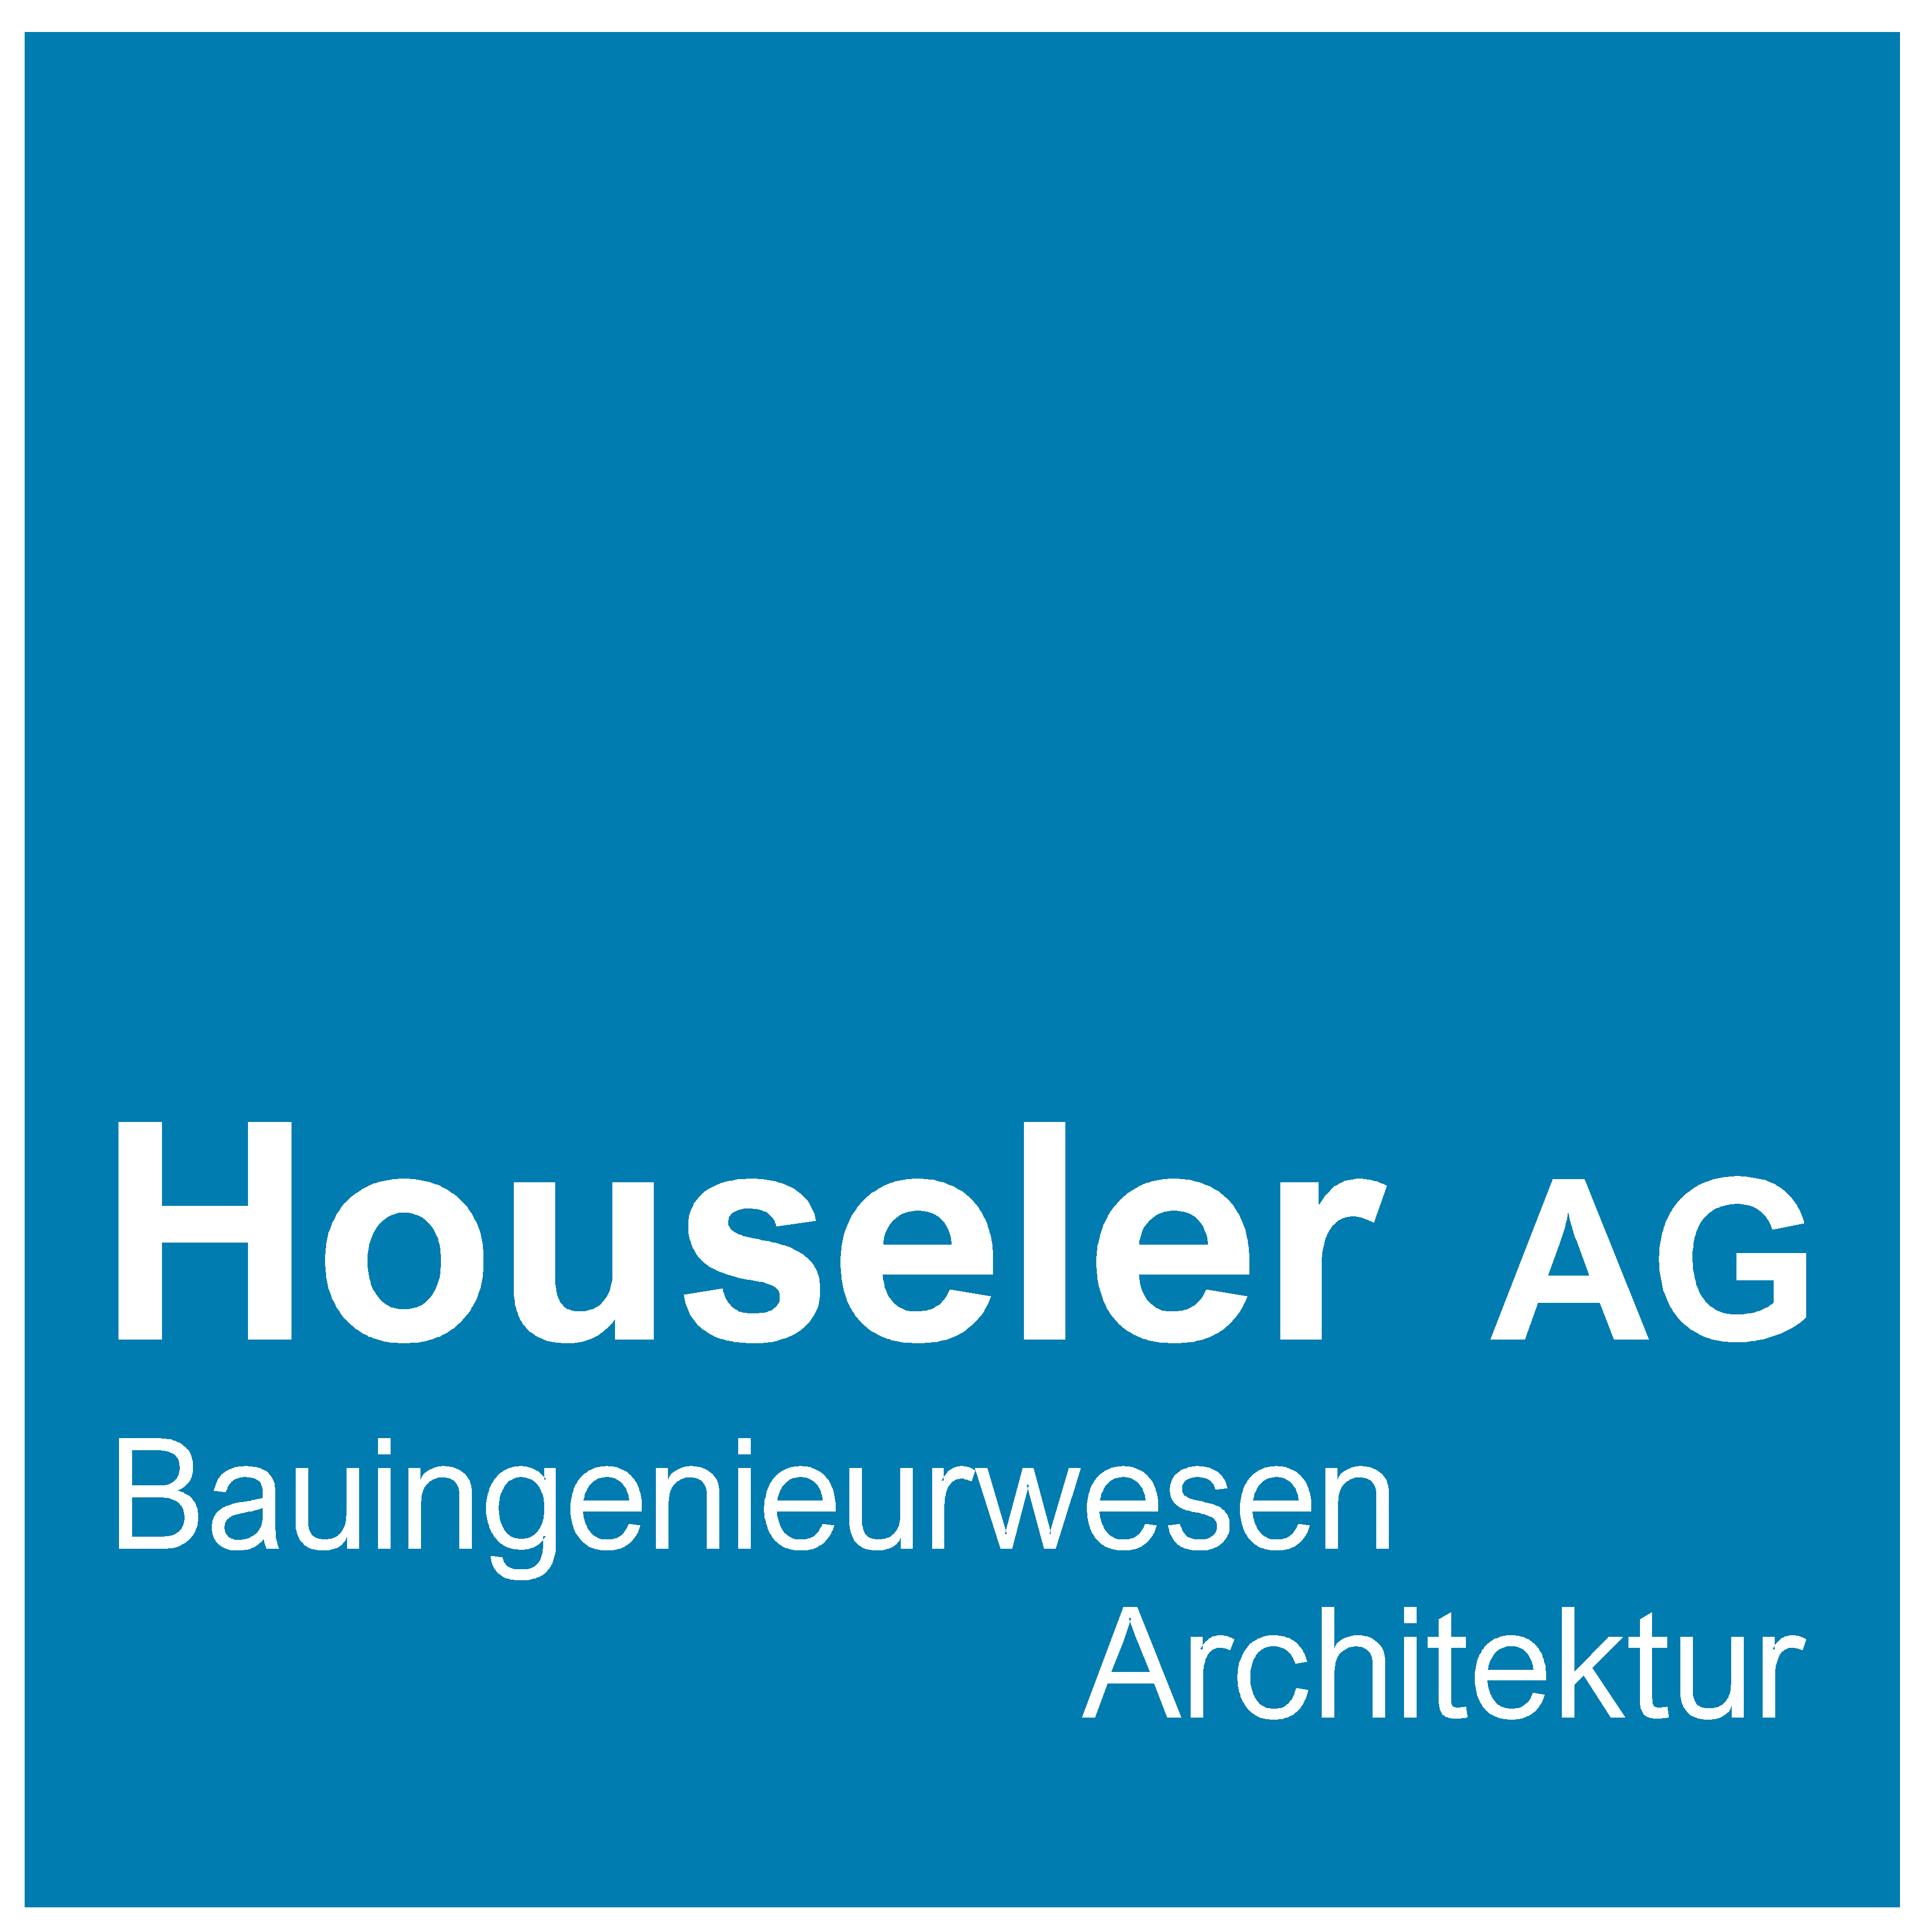 Houseler AG Logo